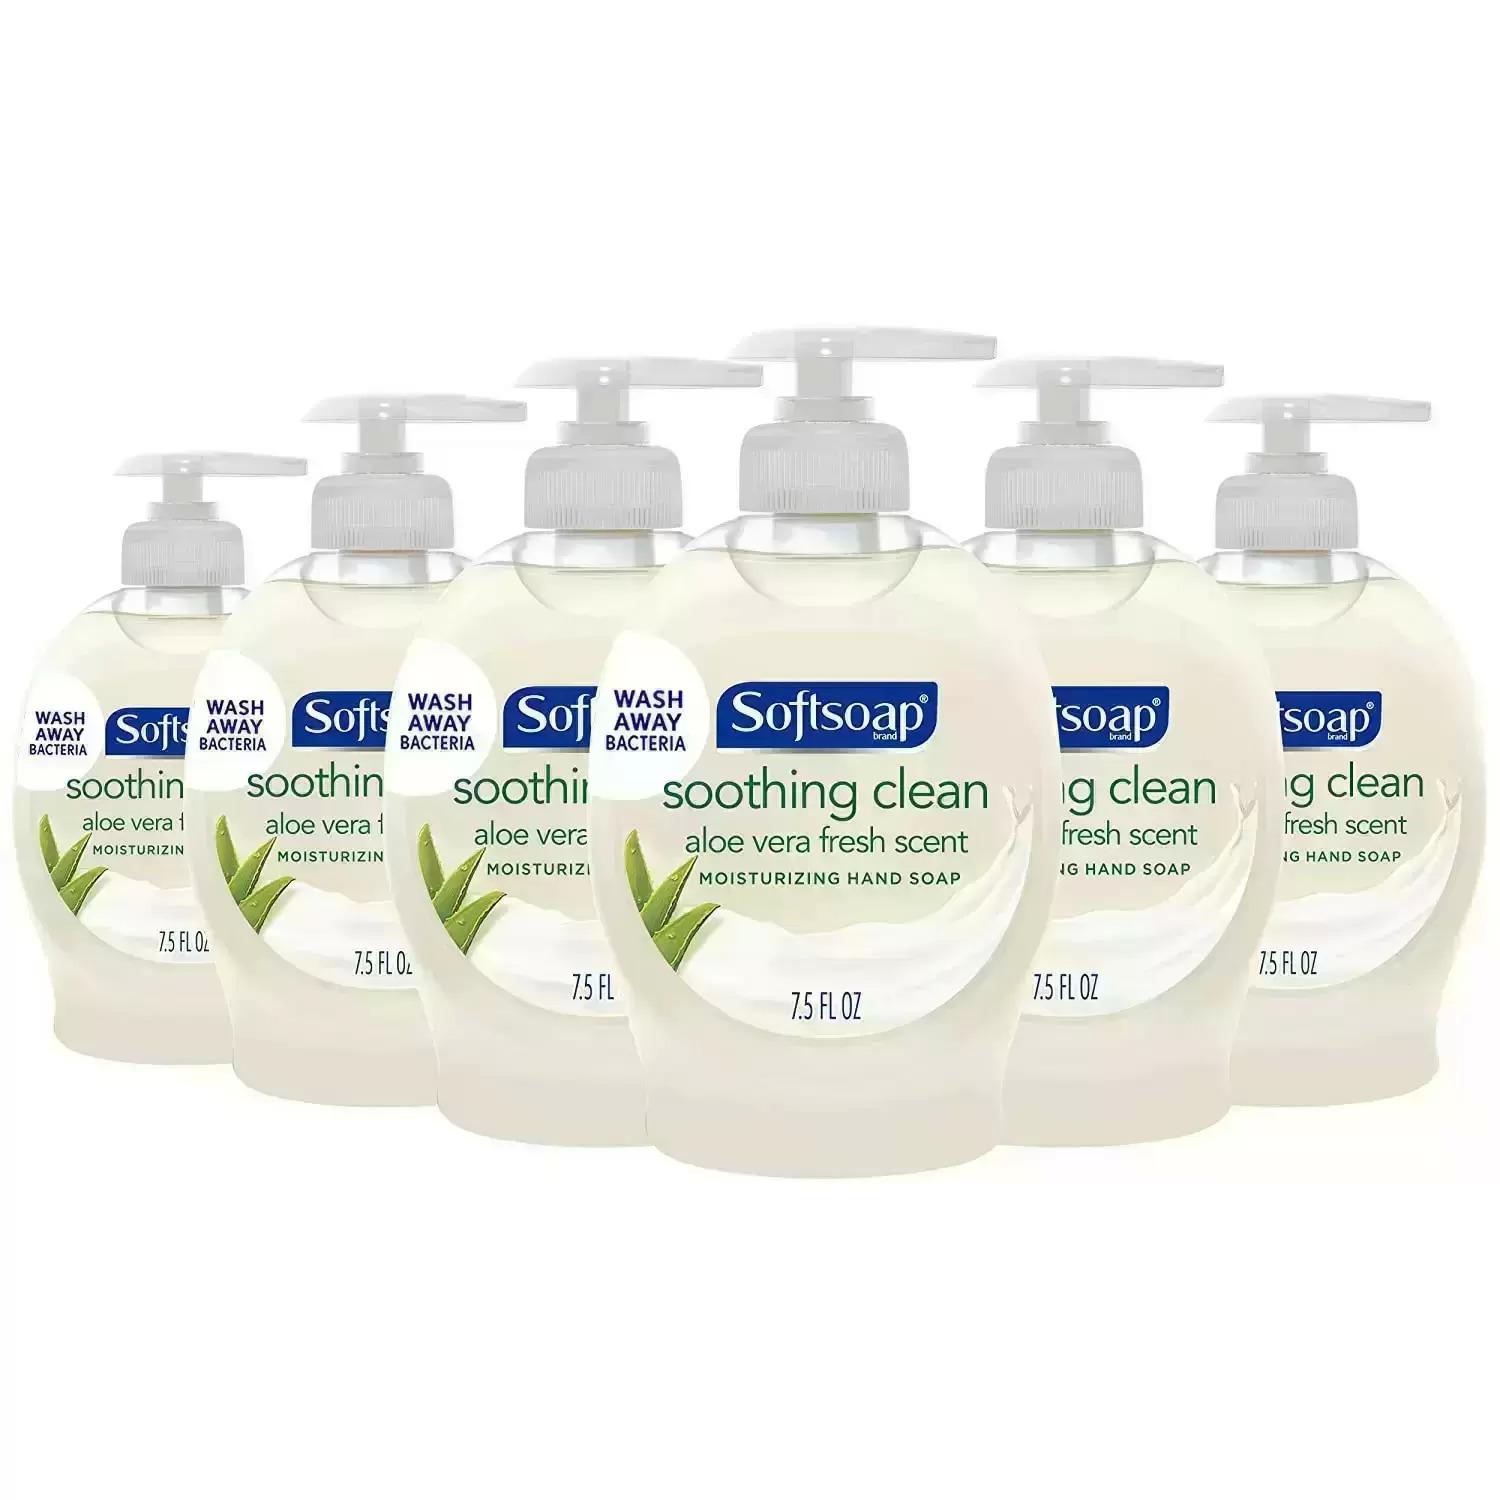 6 Softsoap Moisturizing Aloe Vera Liquid Hand Soap for $4.14 Shipped